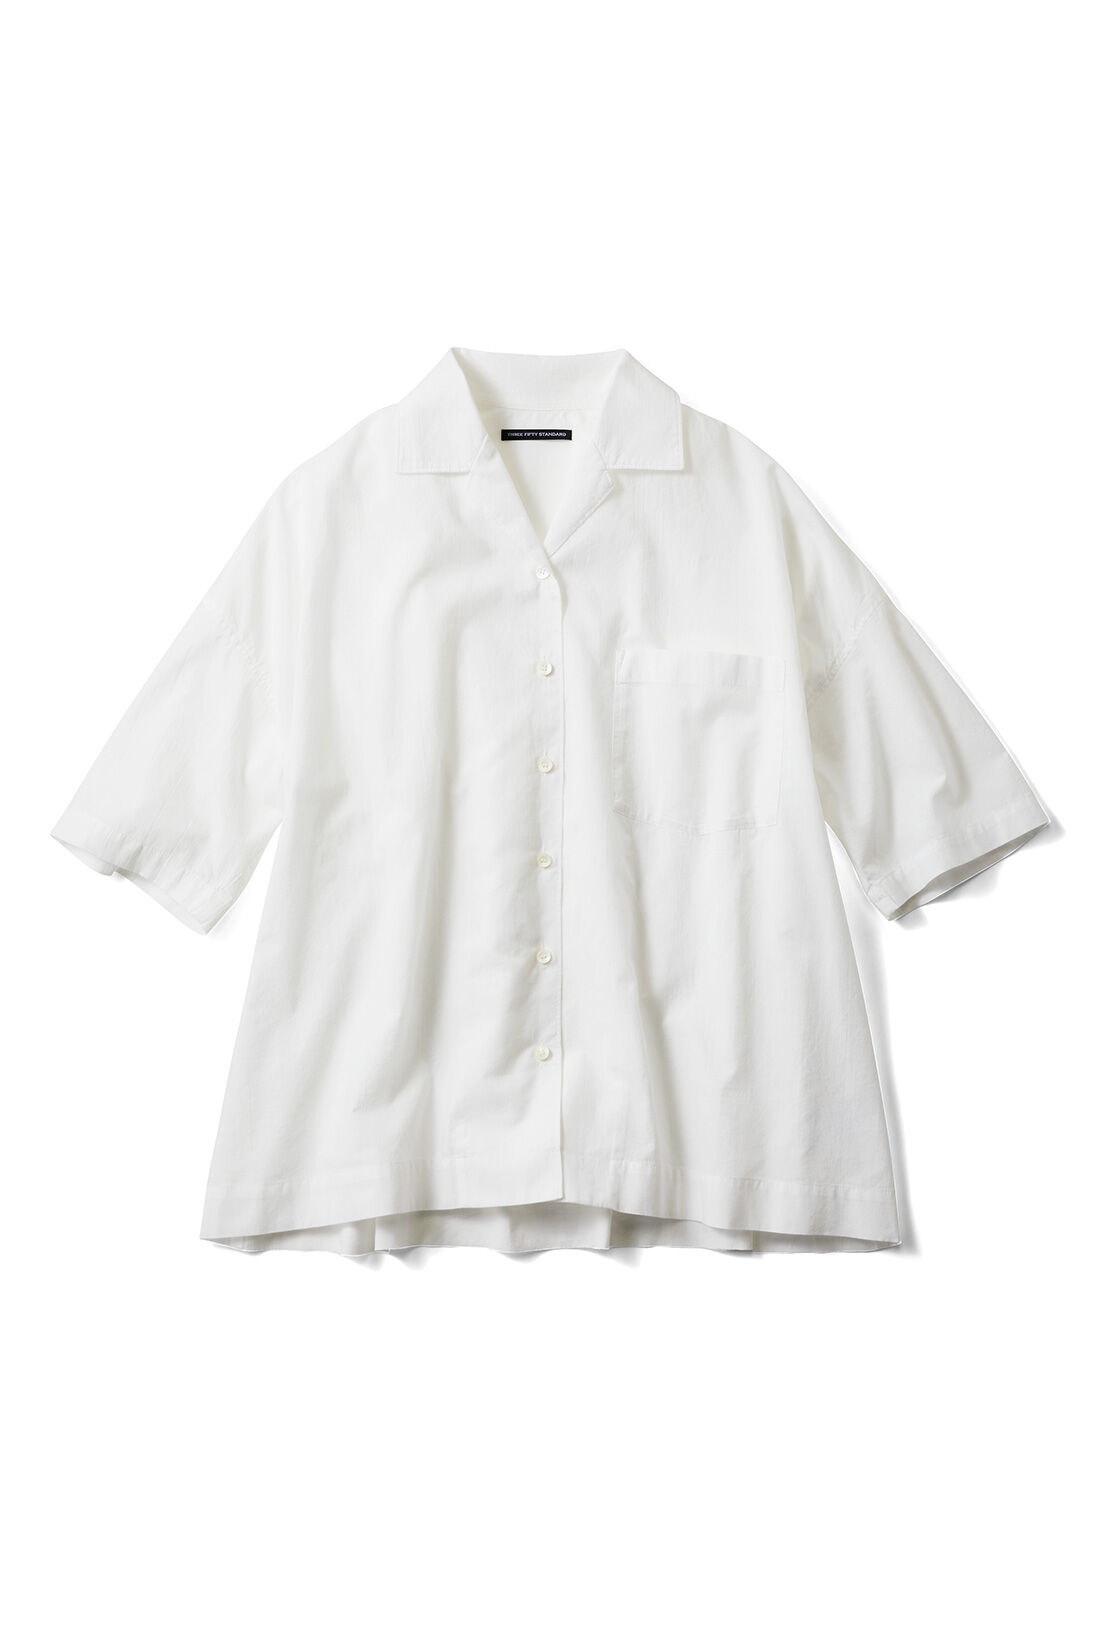 THREE FIFTY STANDARD|THREE FIFTY STANDARD 金子敦子さんと作った ひじが隠れる大人の白い開衿シャツ